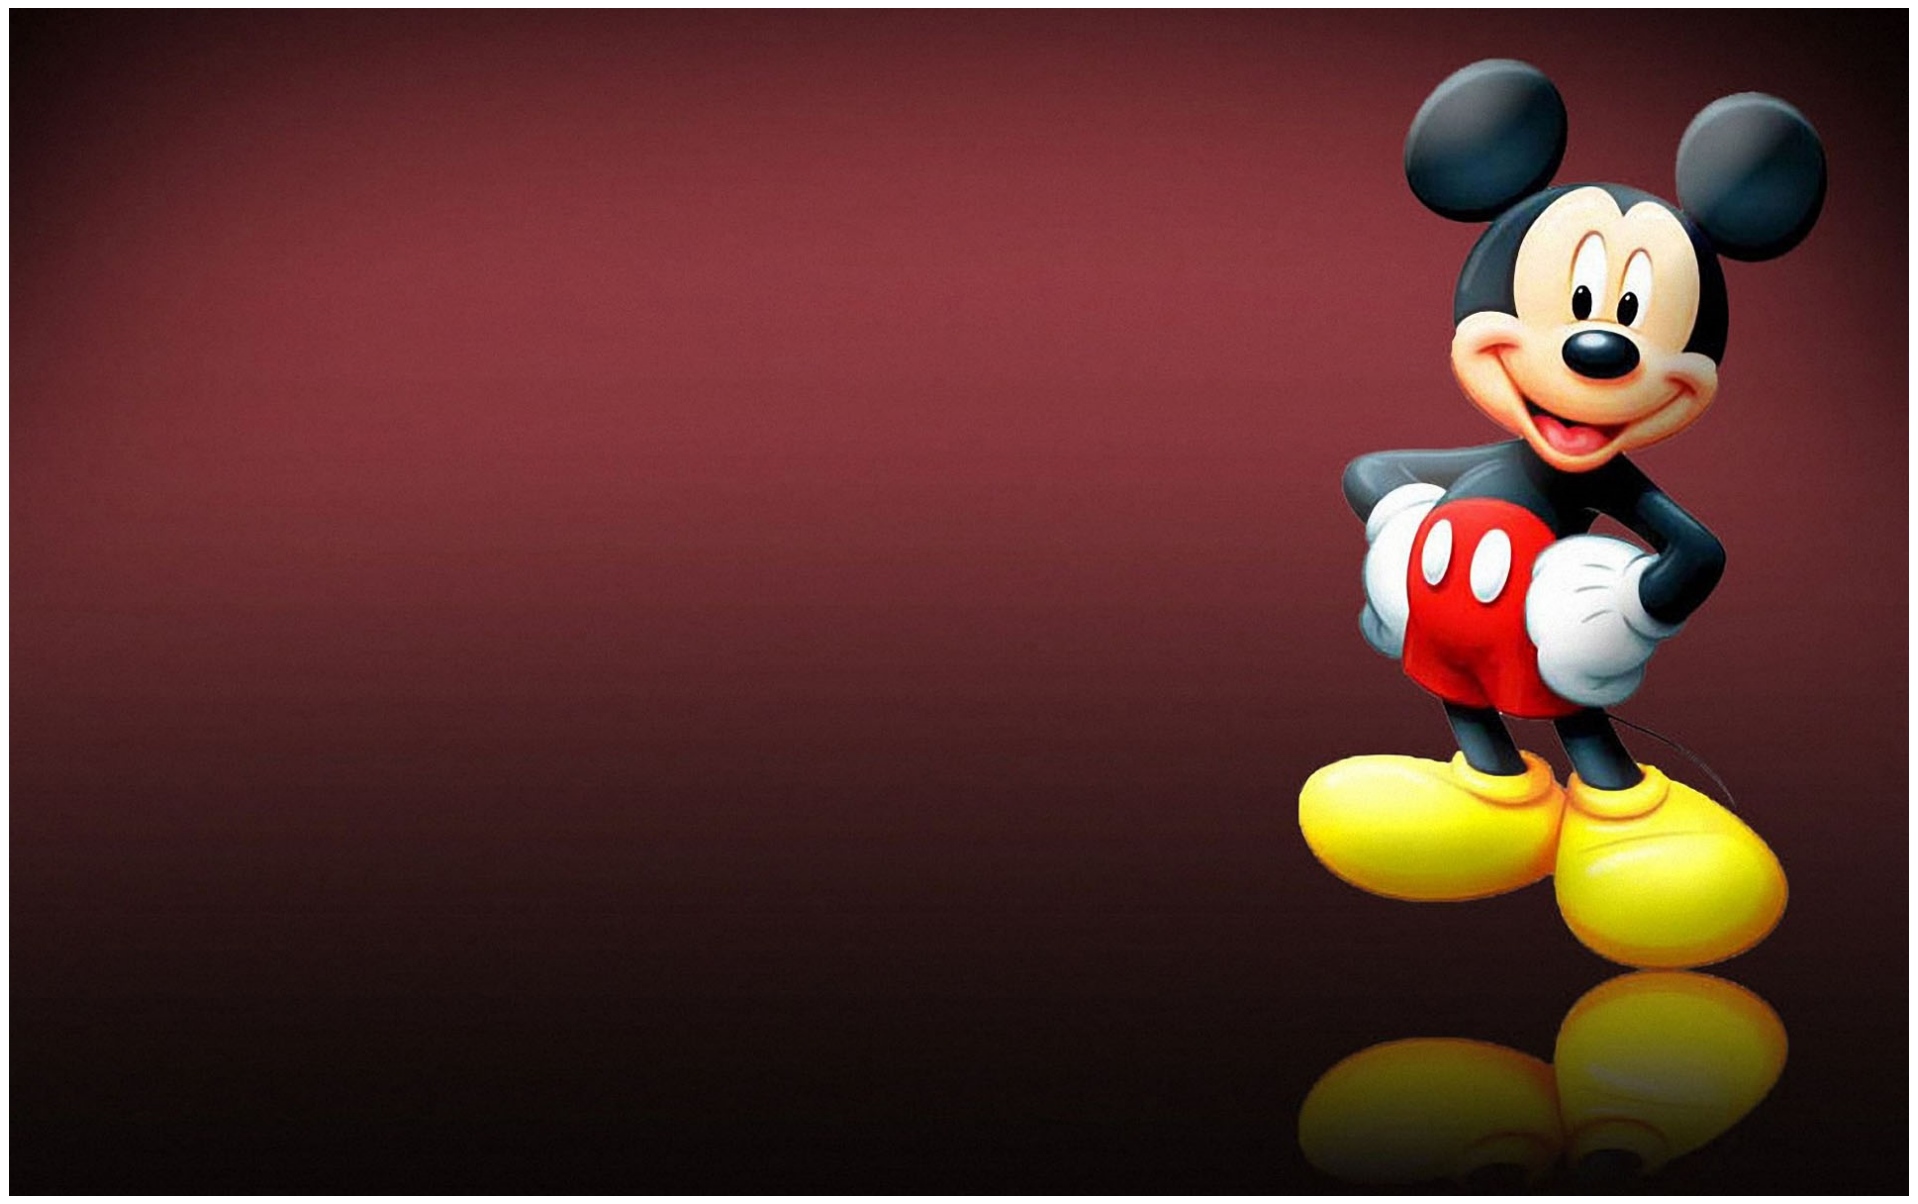 fond d'écran mickey mouse téléchargement gratuit,dessin animé,dessin animé,animation,personnage fictif,figurine